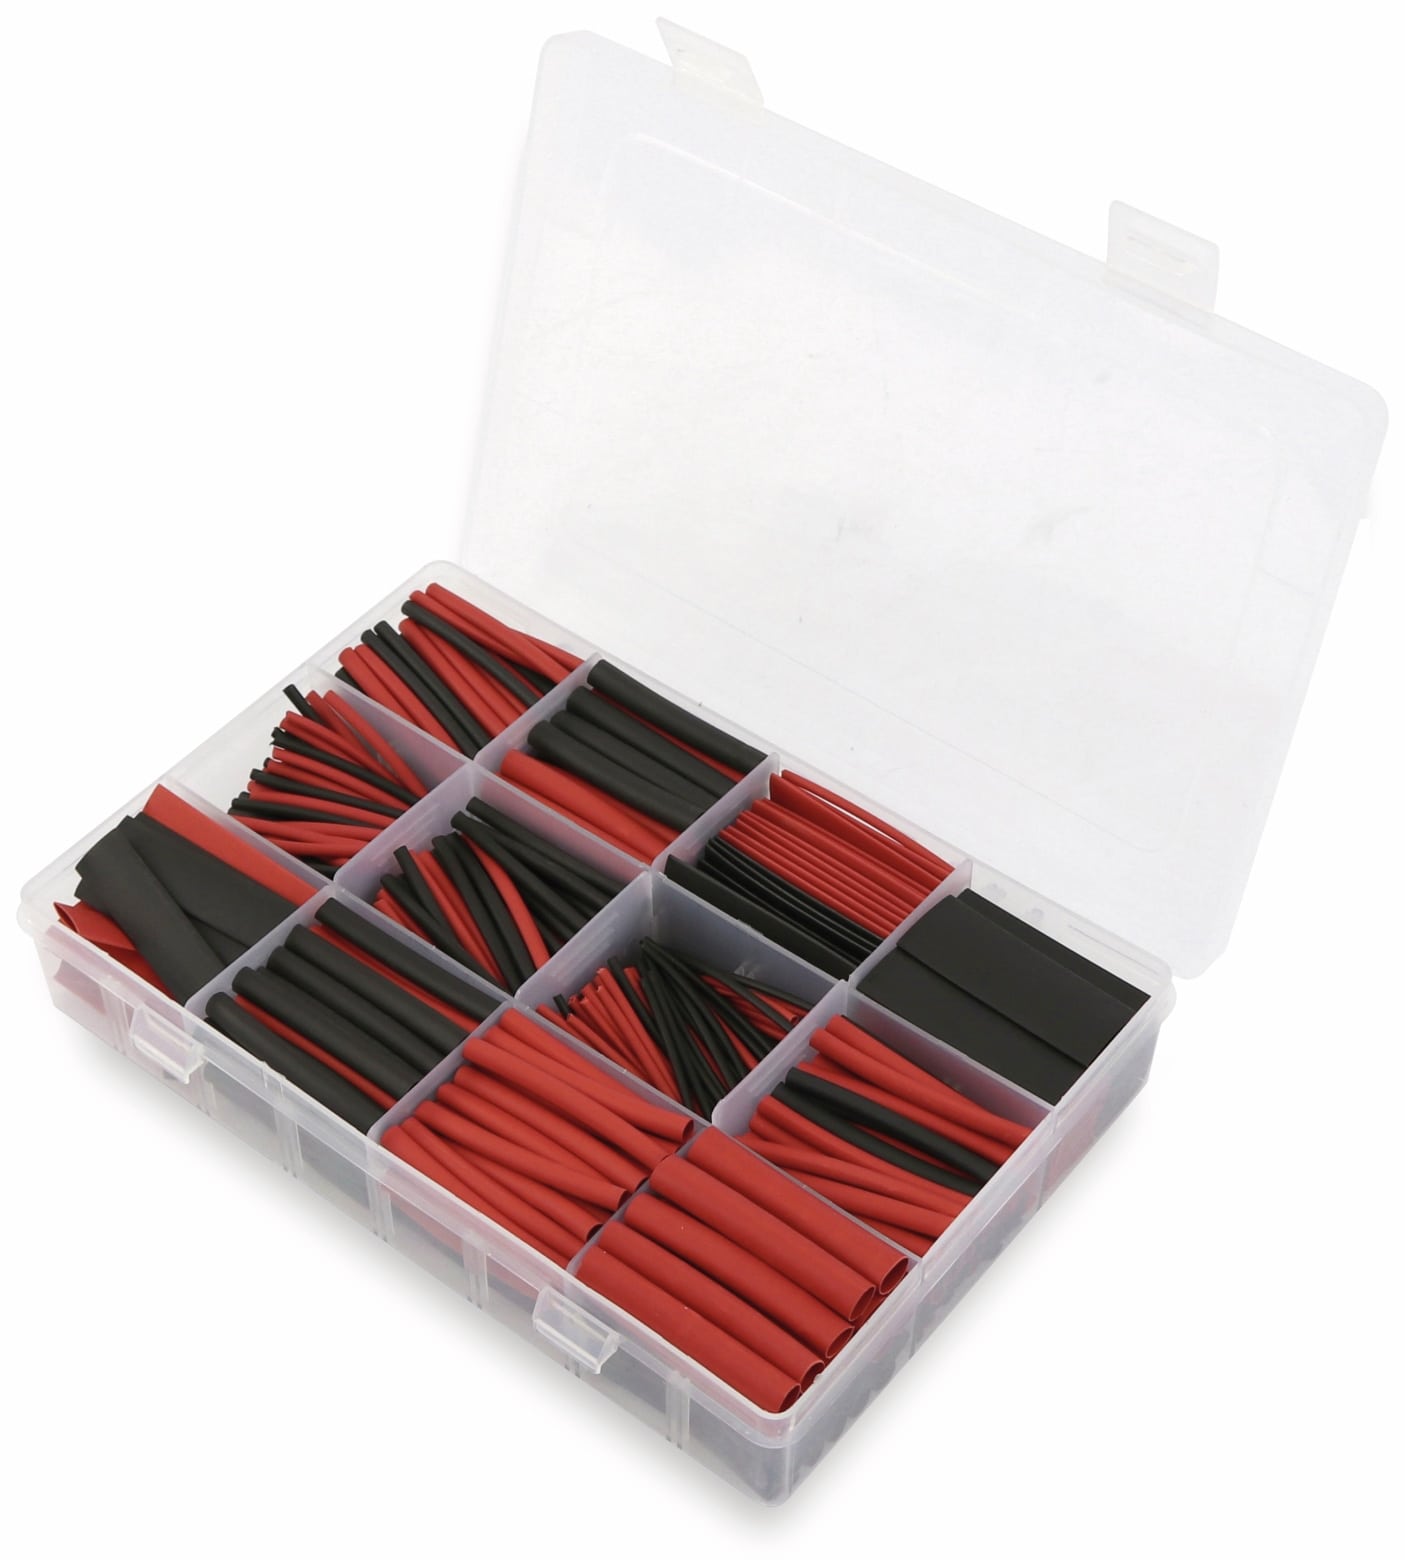 Schrumpfschlauch-Sortiment, 560-teilig in Plastikbox, Schrumpfrate 2:1, schwarz + rot